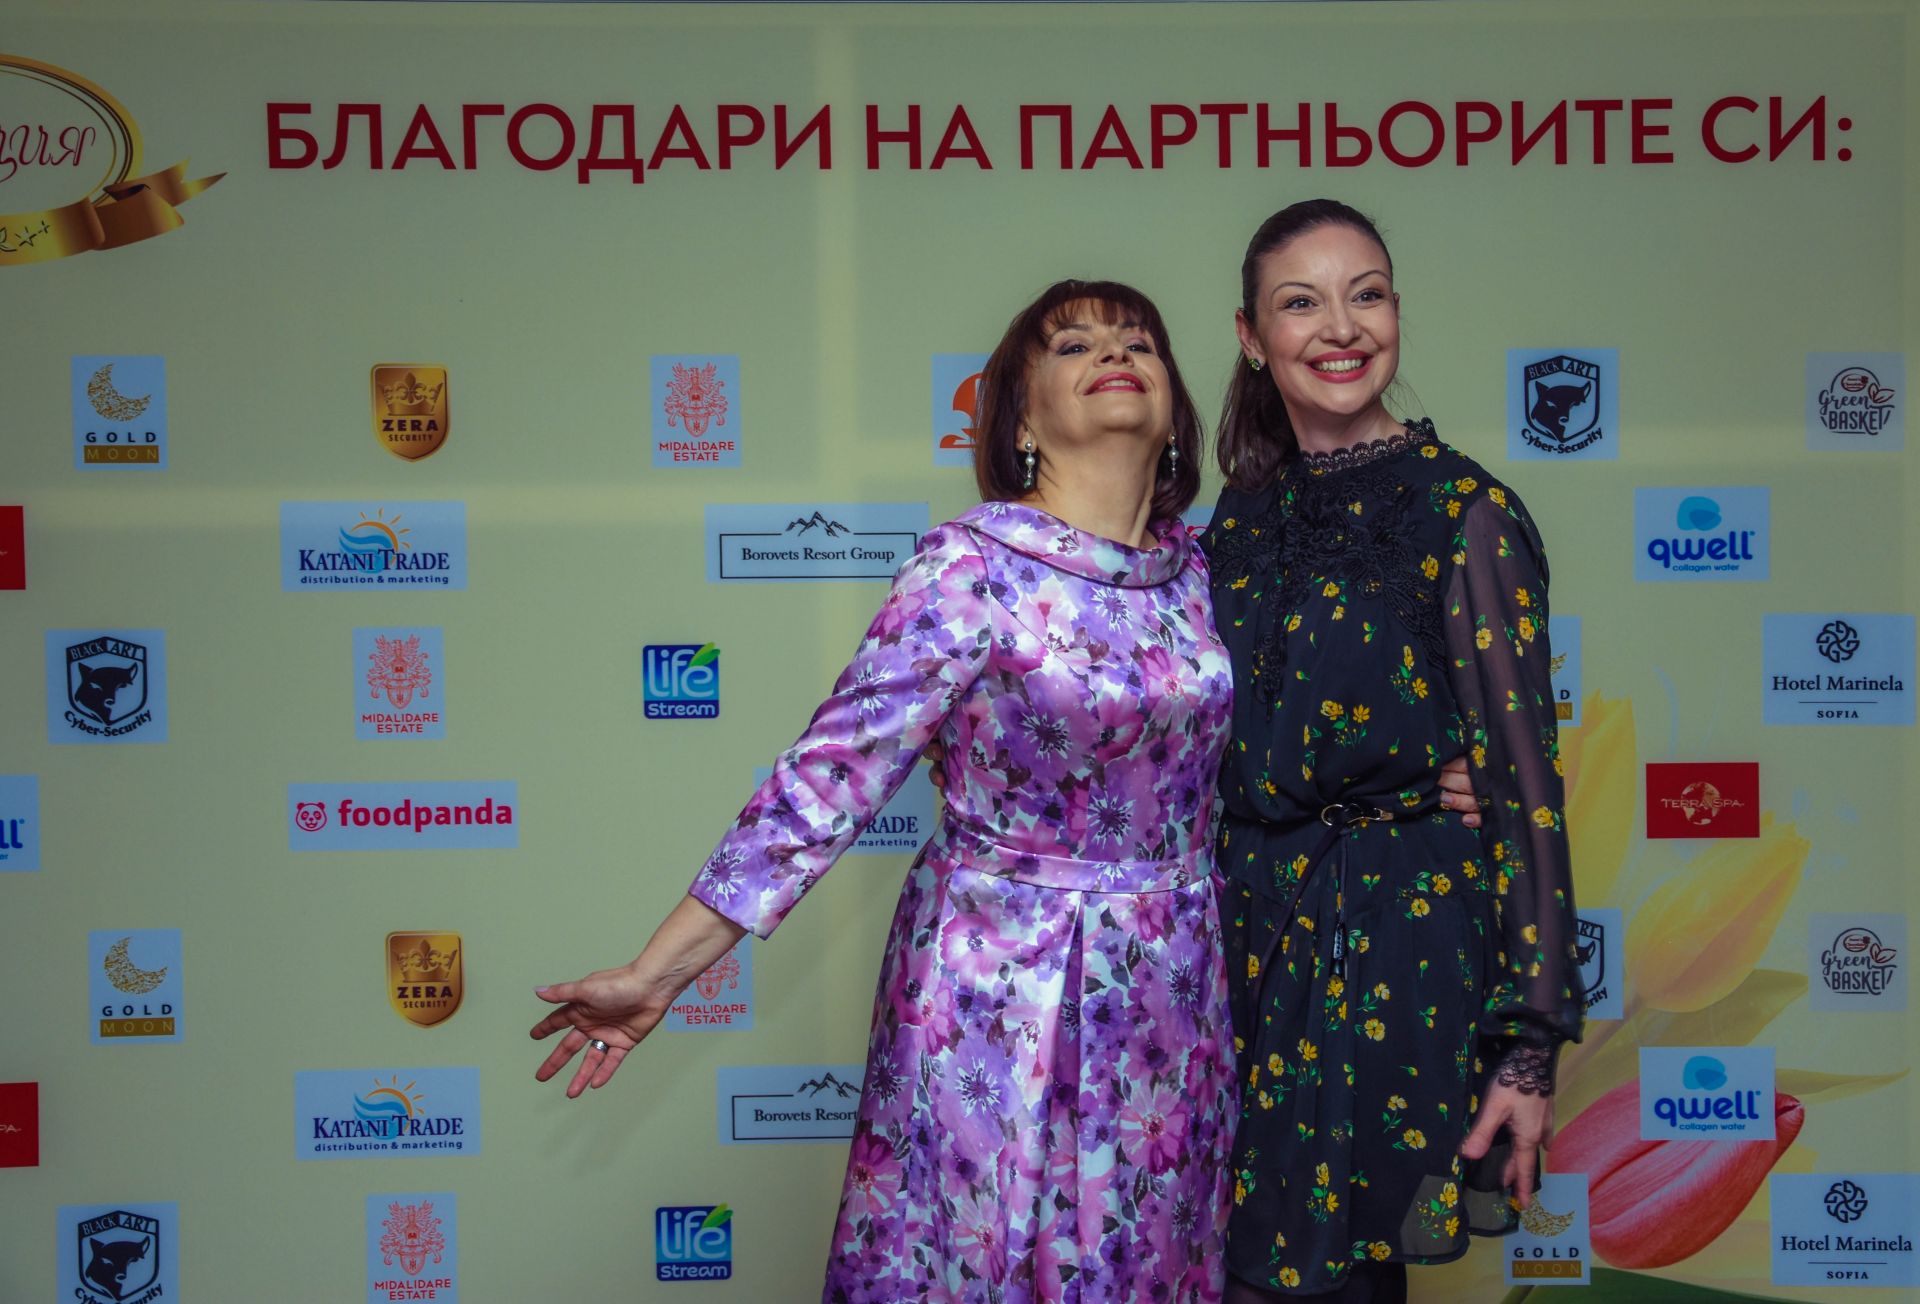 Миглена Ангелова и Вихра Петрова